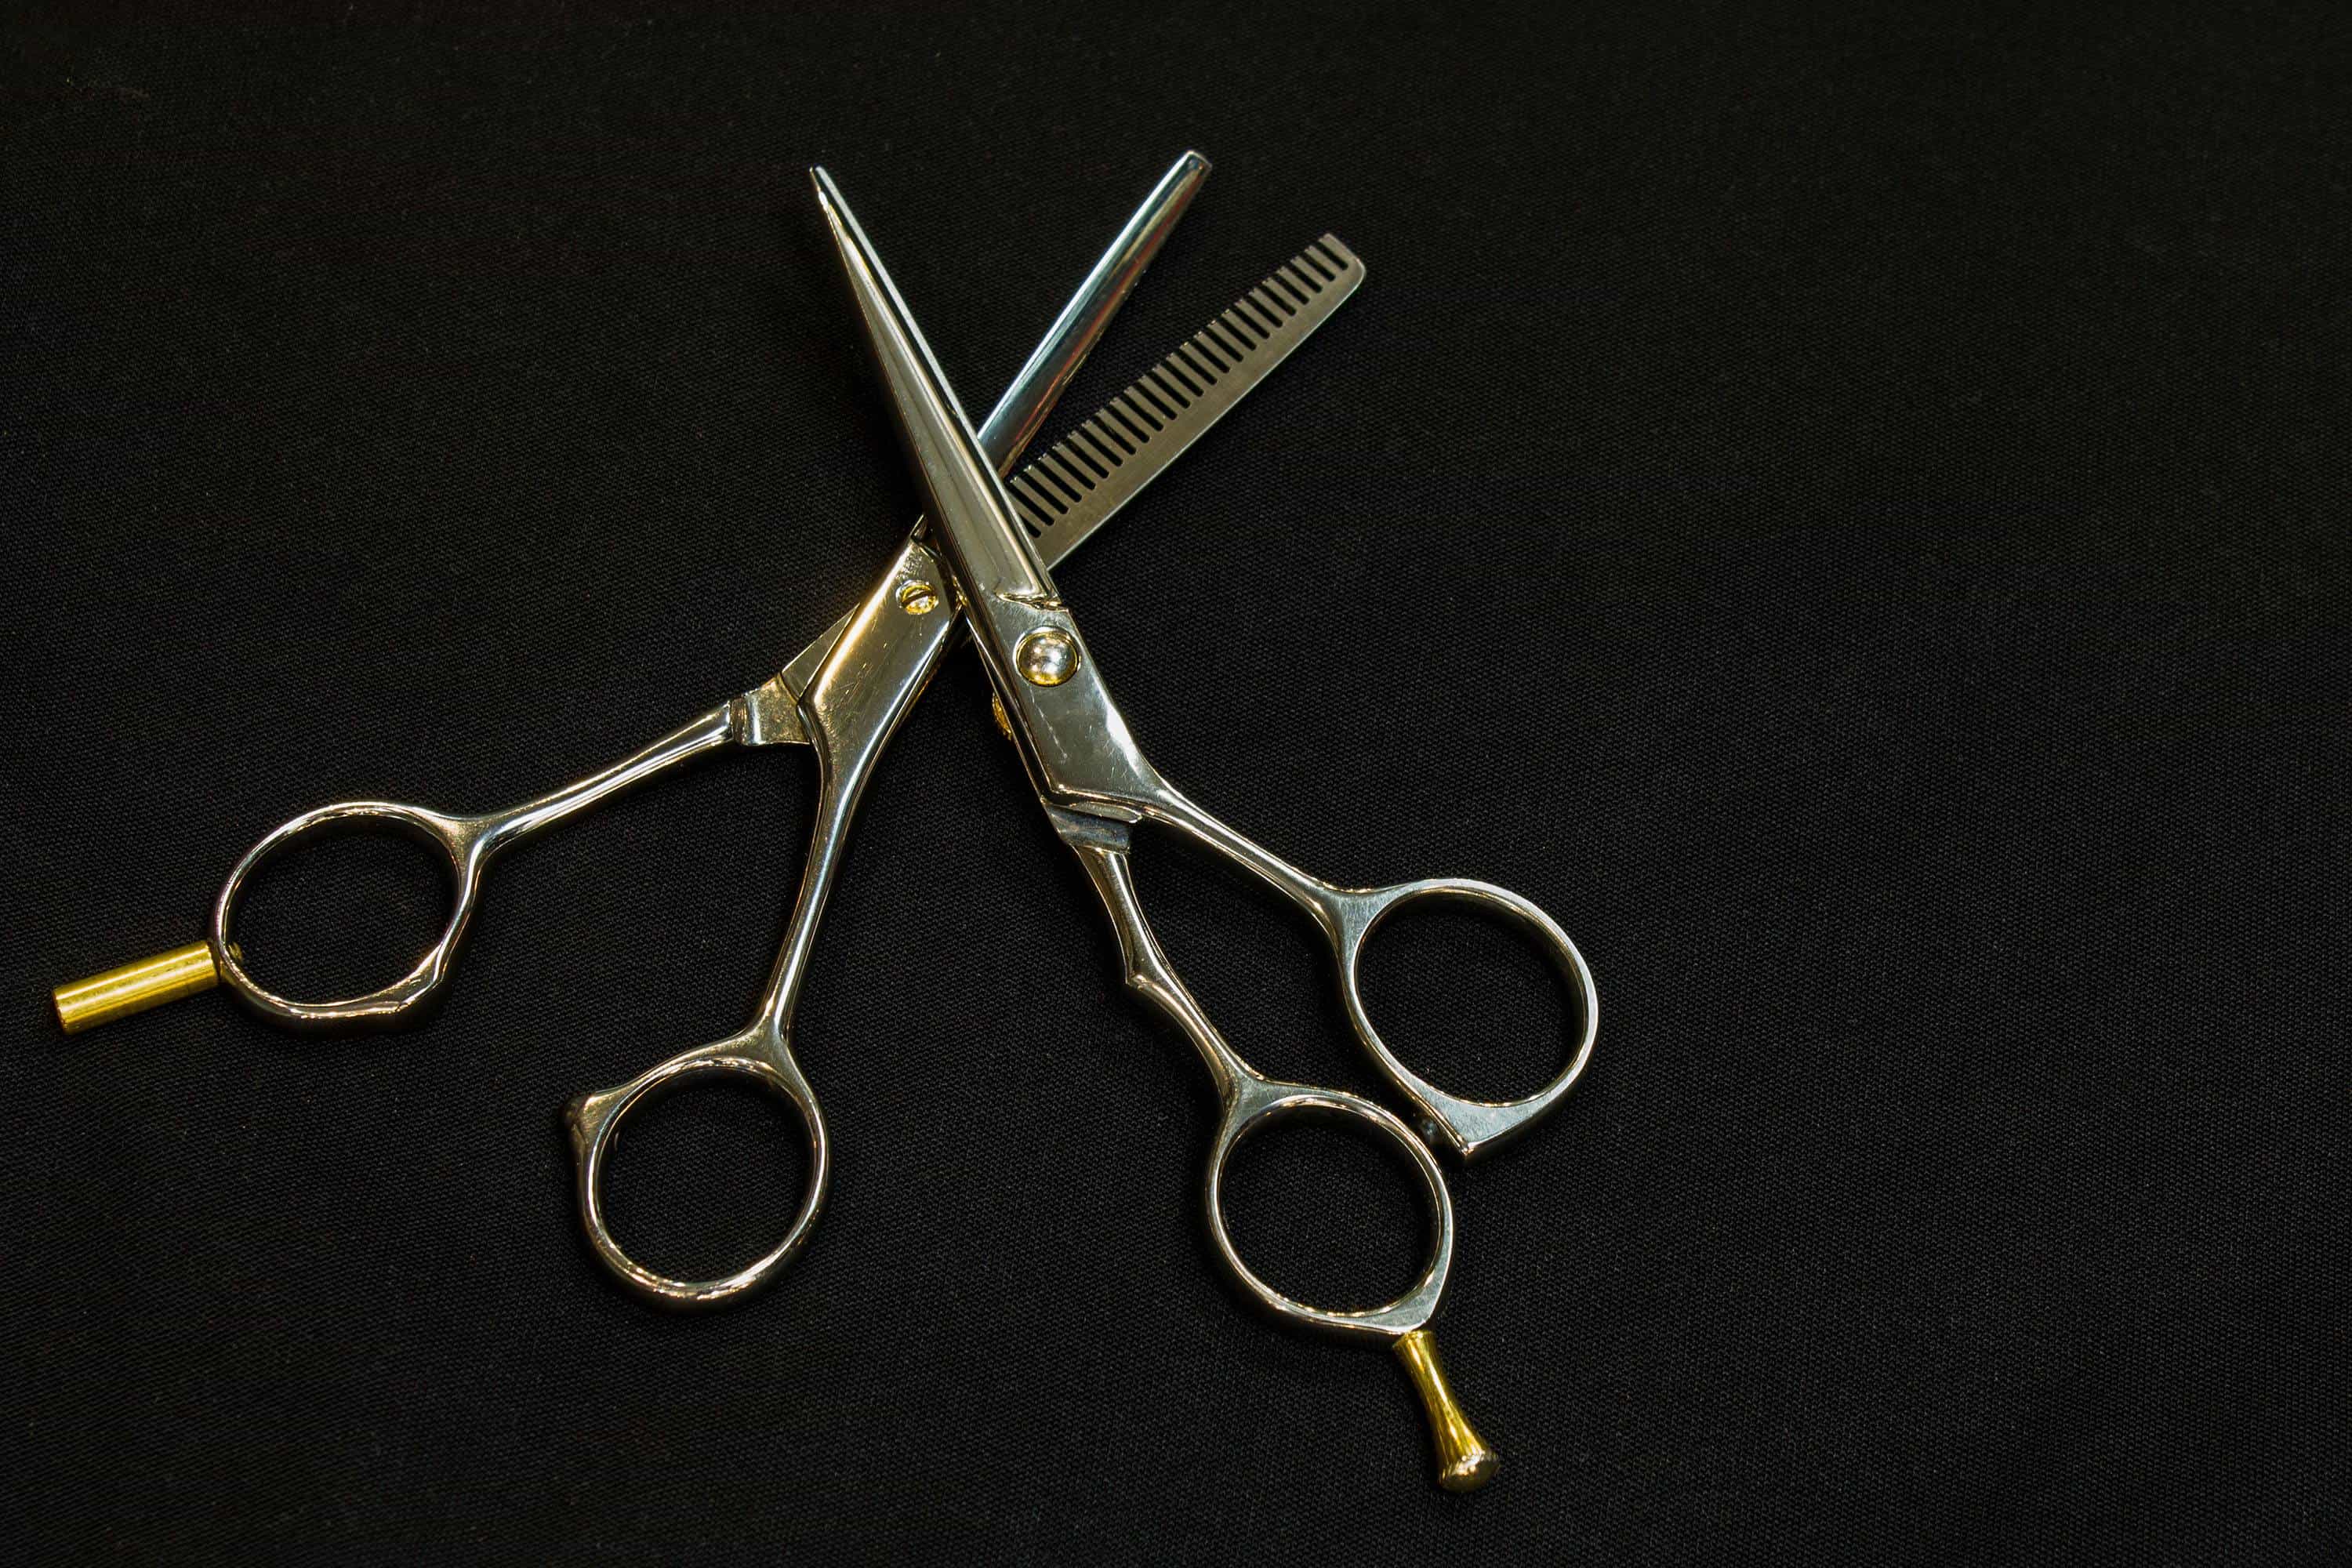 equinox scissors set